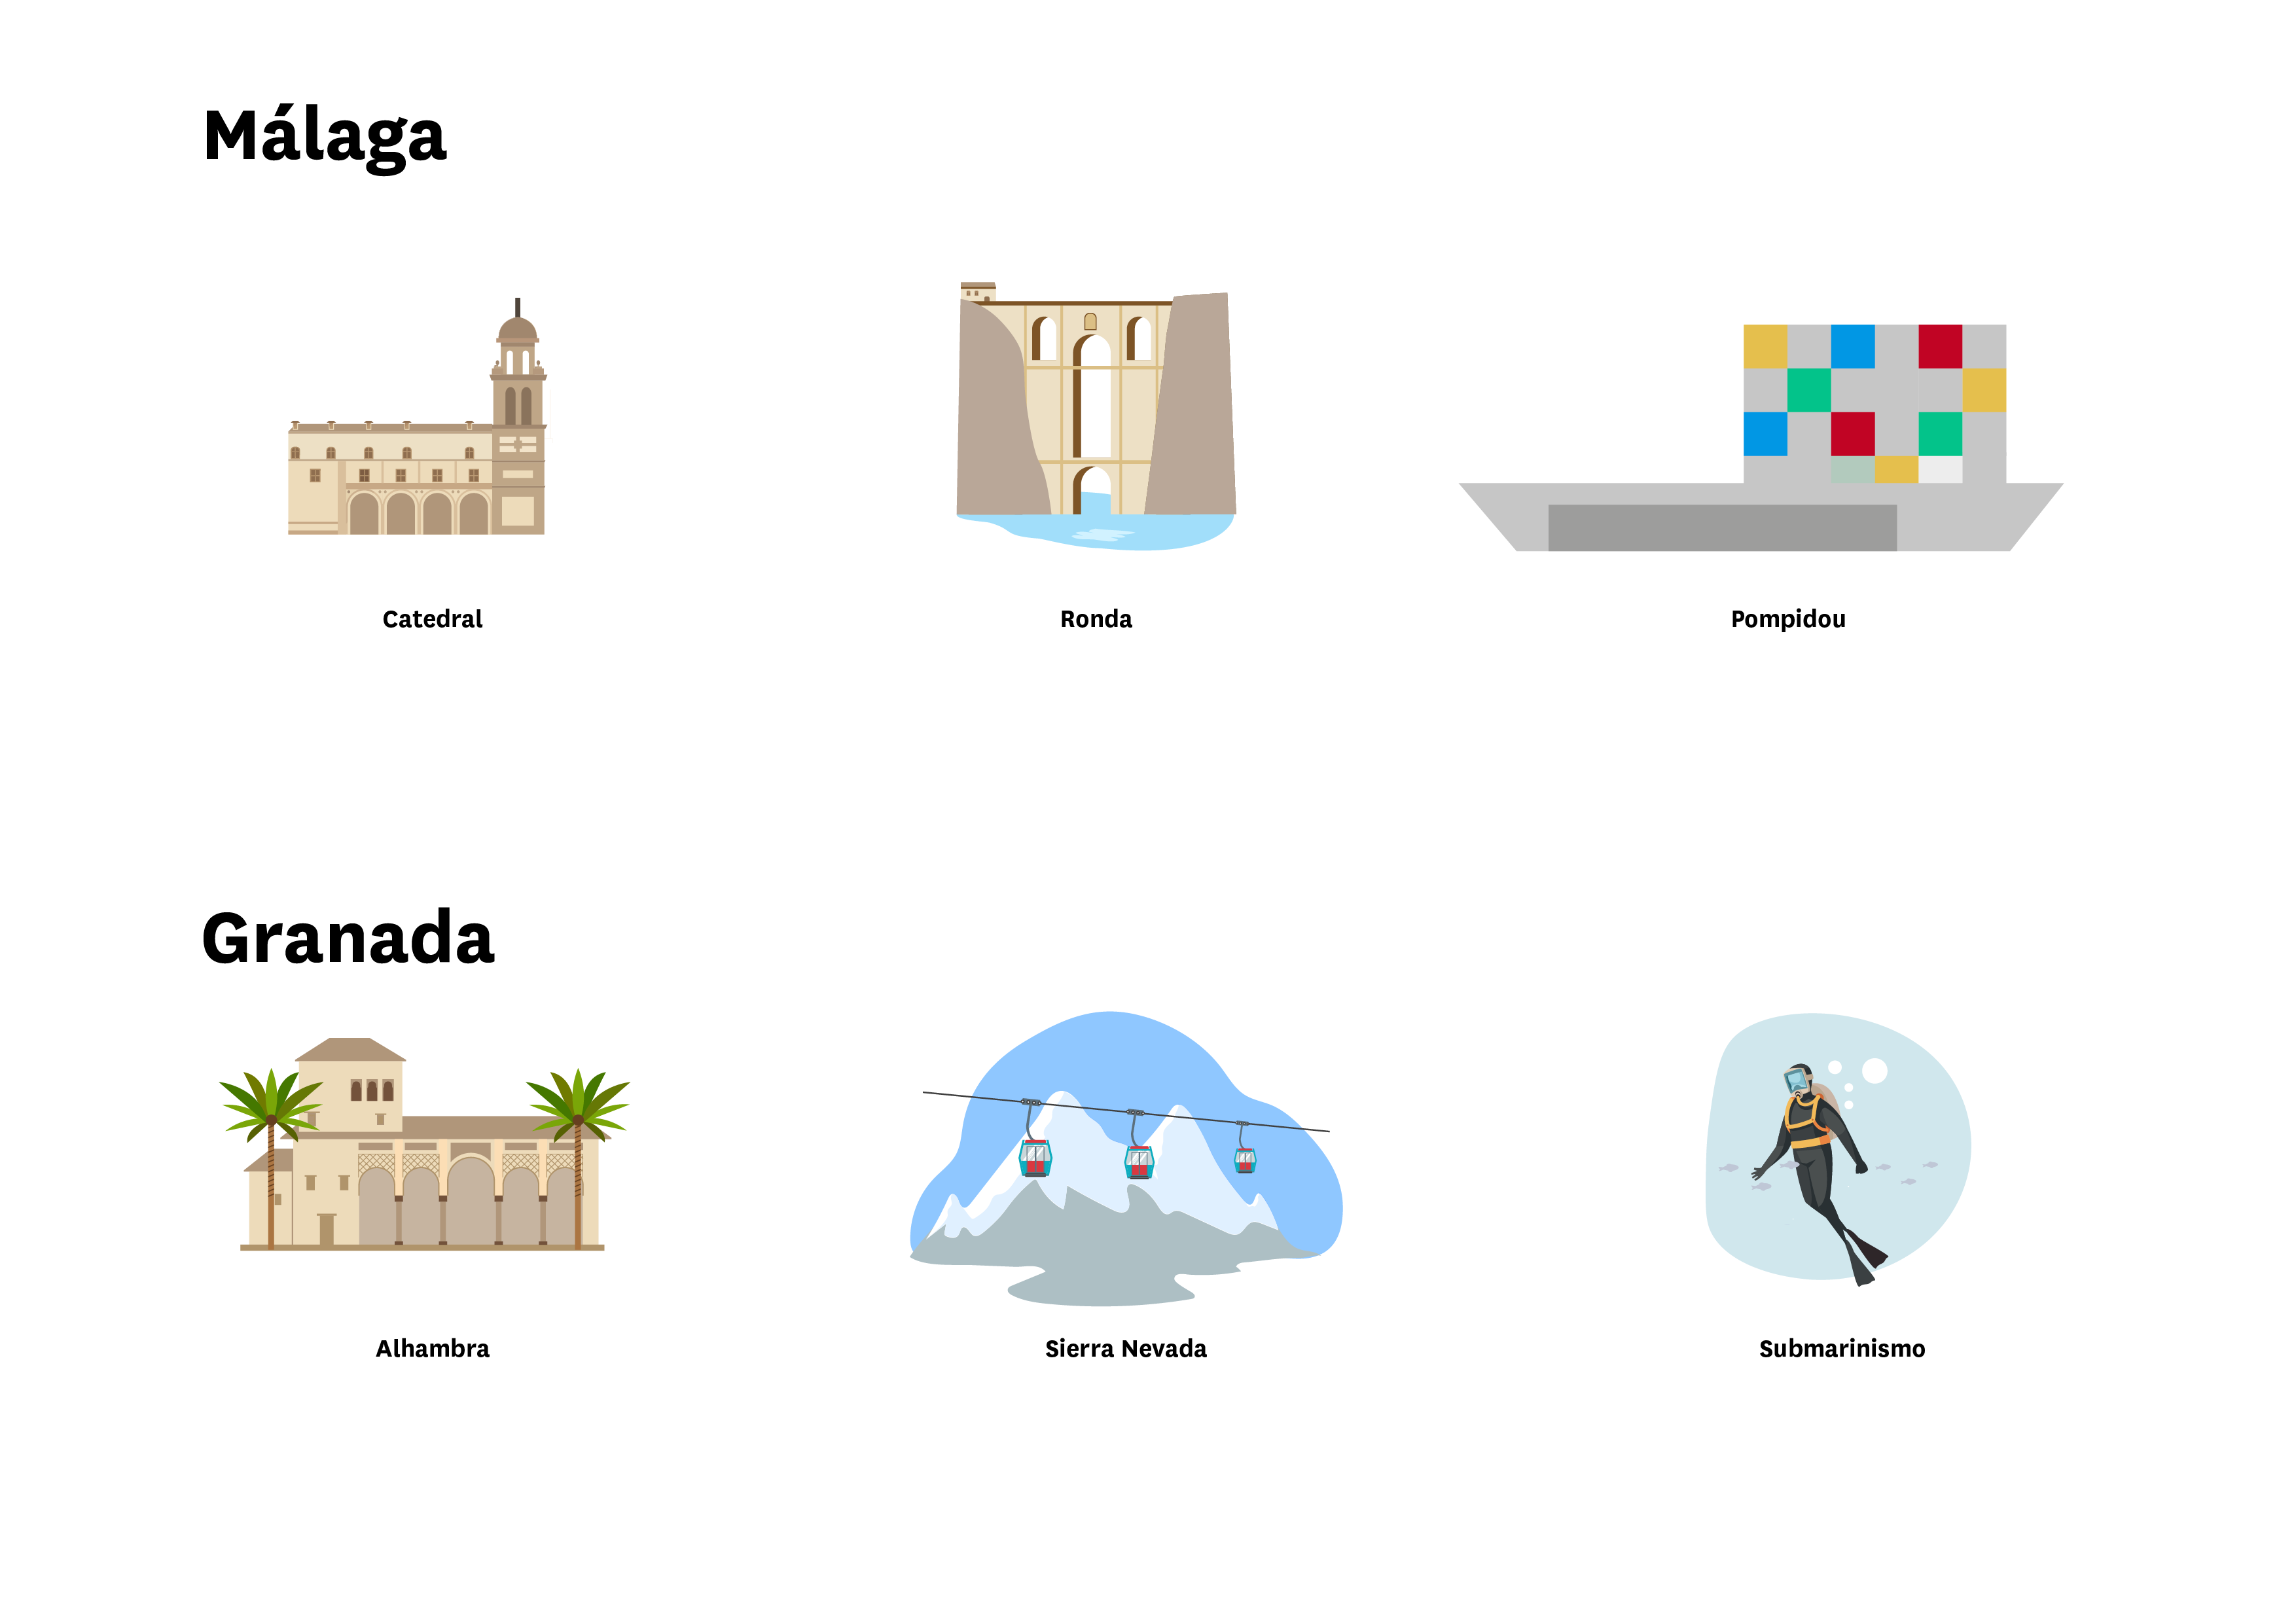 La imagen muestra localizaciones de Málaga ( Catedral, Ronda y Pompidou) y Granada ( Alhambra, Sierra Nevada y Submarinismo)